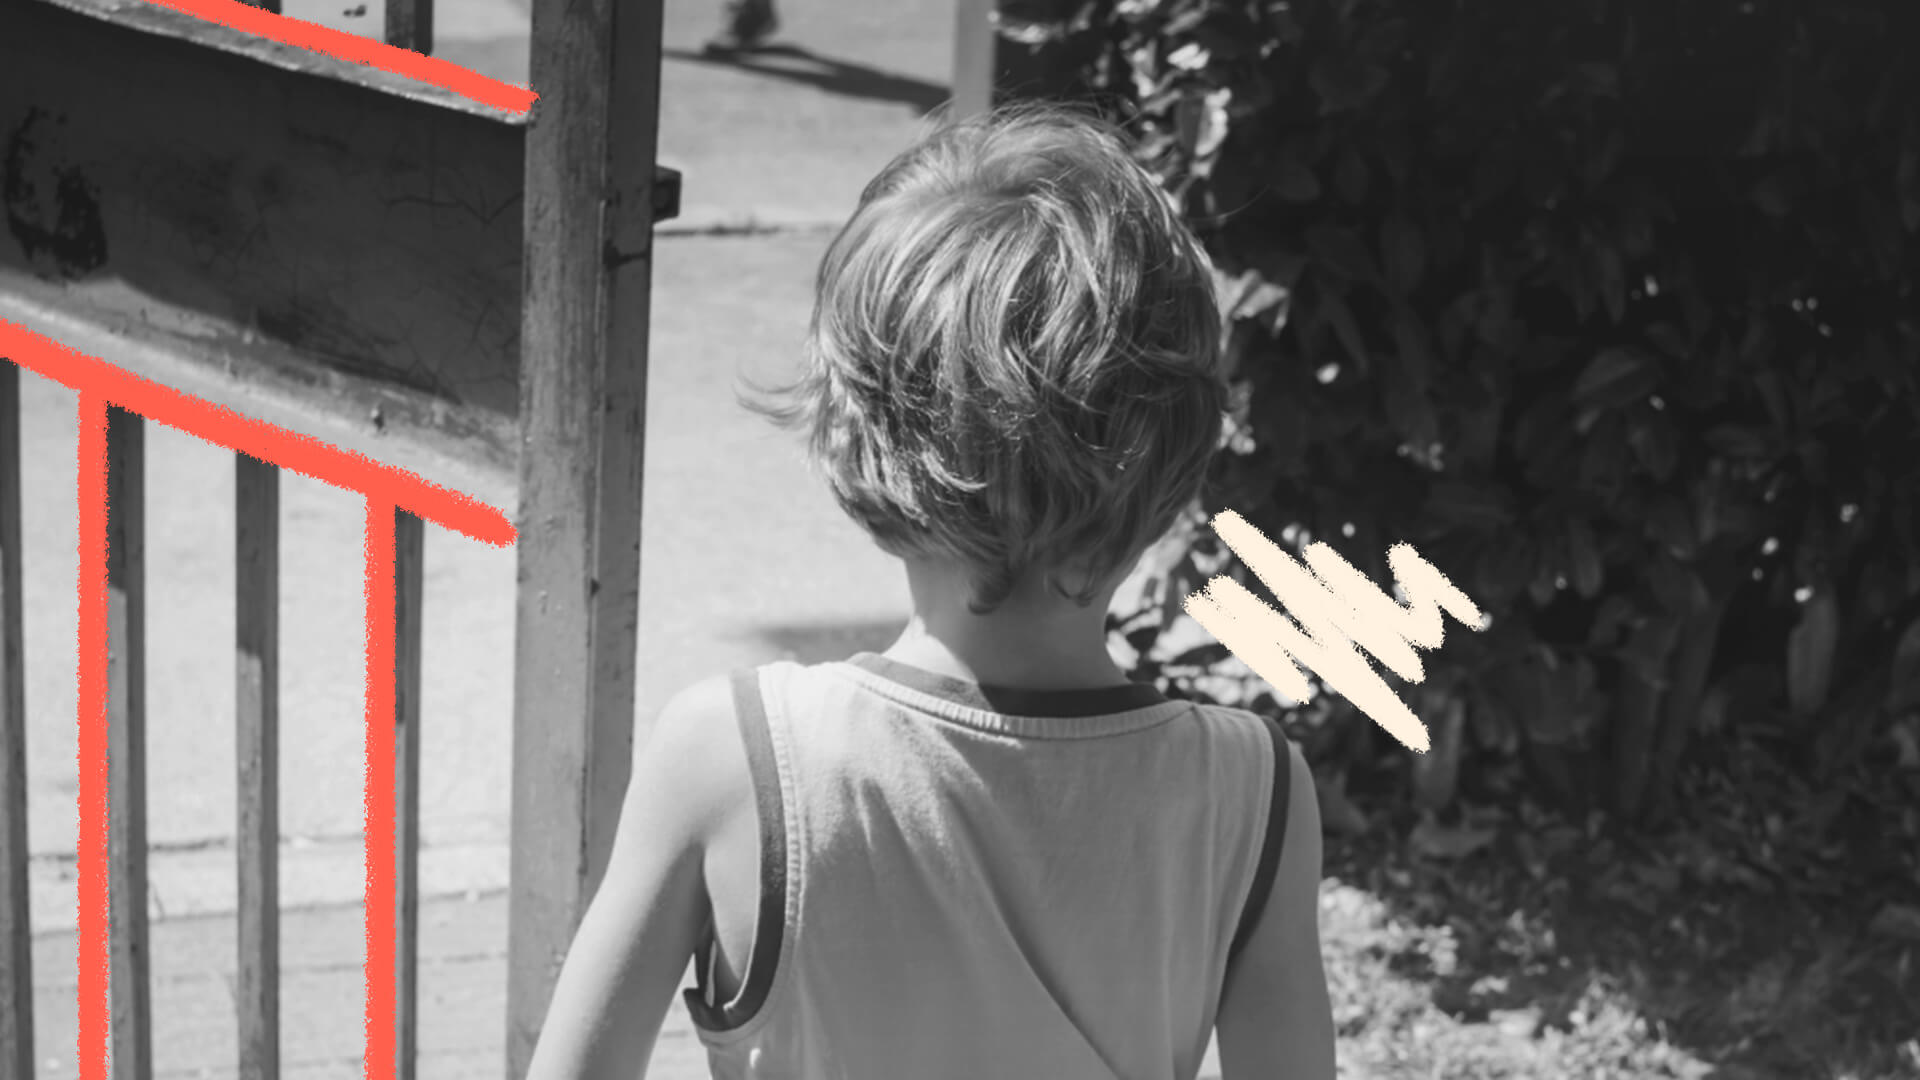 Na imagem, um menino está de costas, sozinho em um ambiente aberto. A imagem é em preto e branco e ilustra matéria sobre tráfico de pessoas.